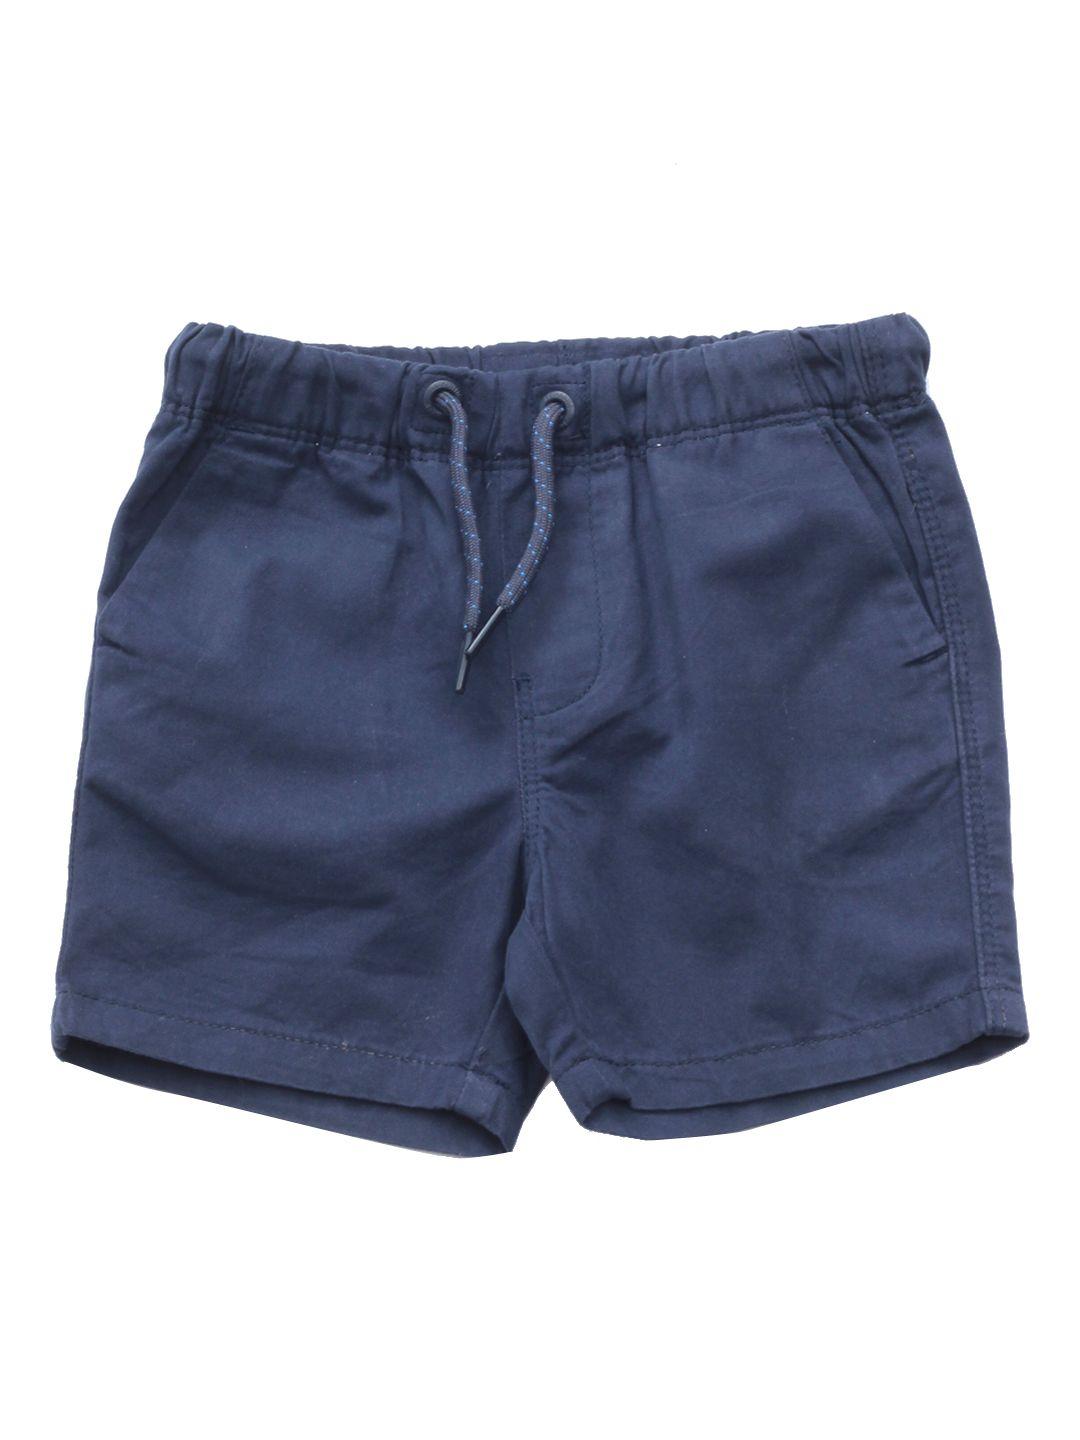 lil lollipop unisex kids navy blue solid pure cotton shorts